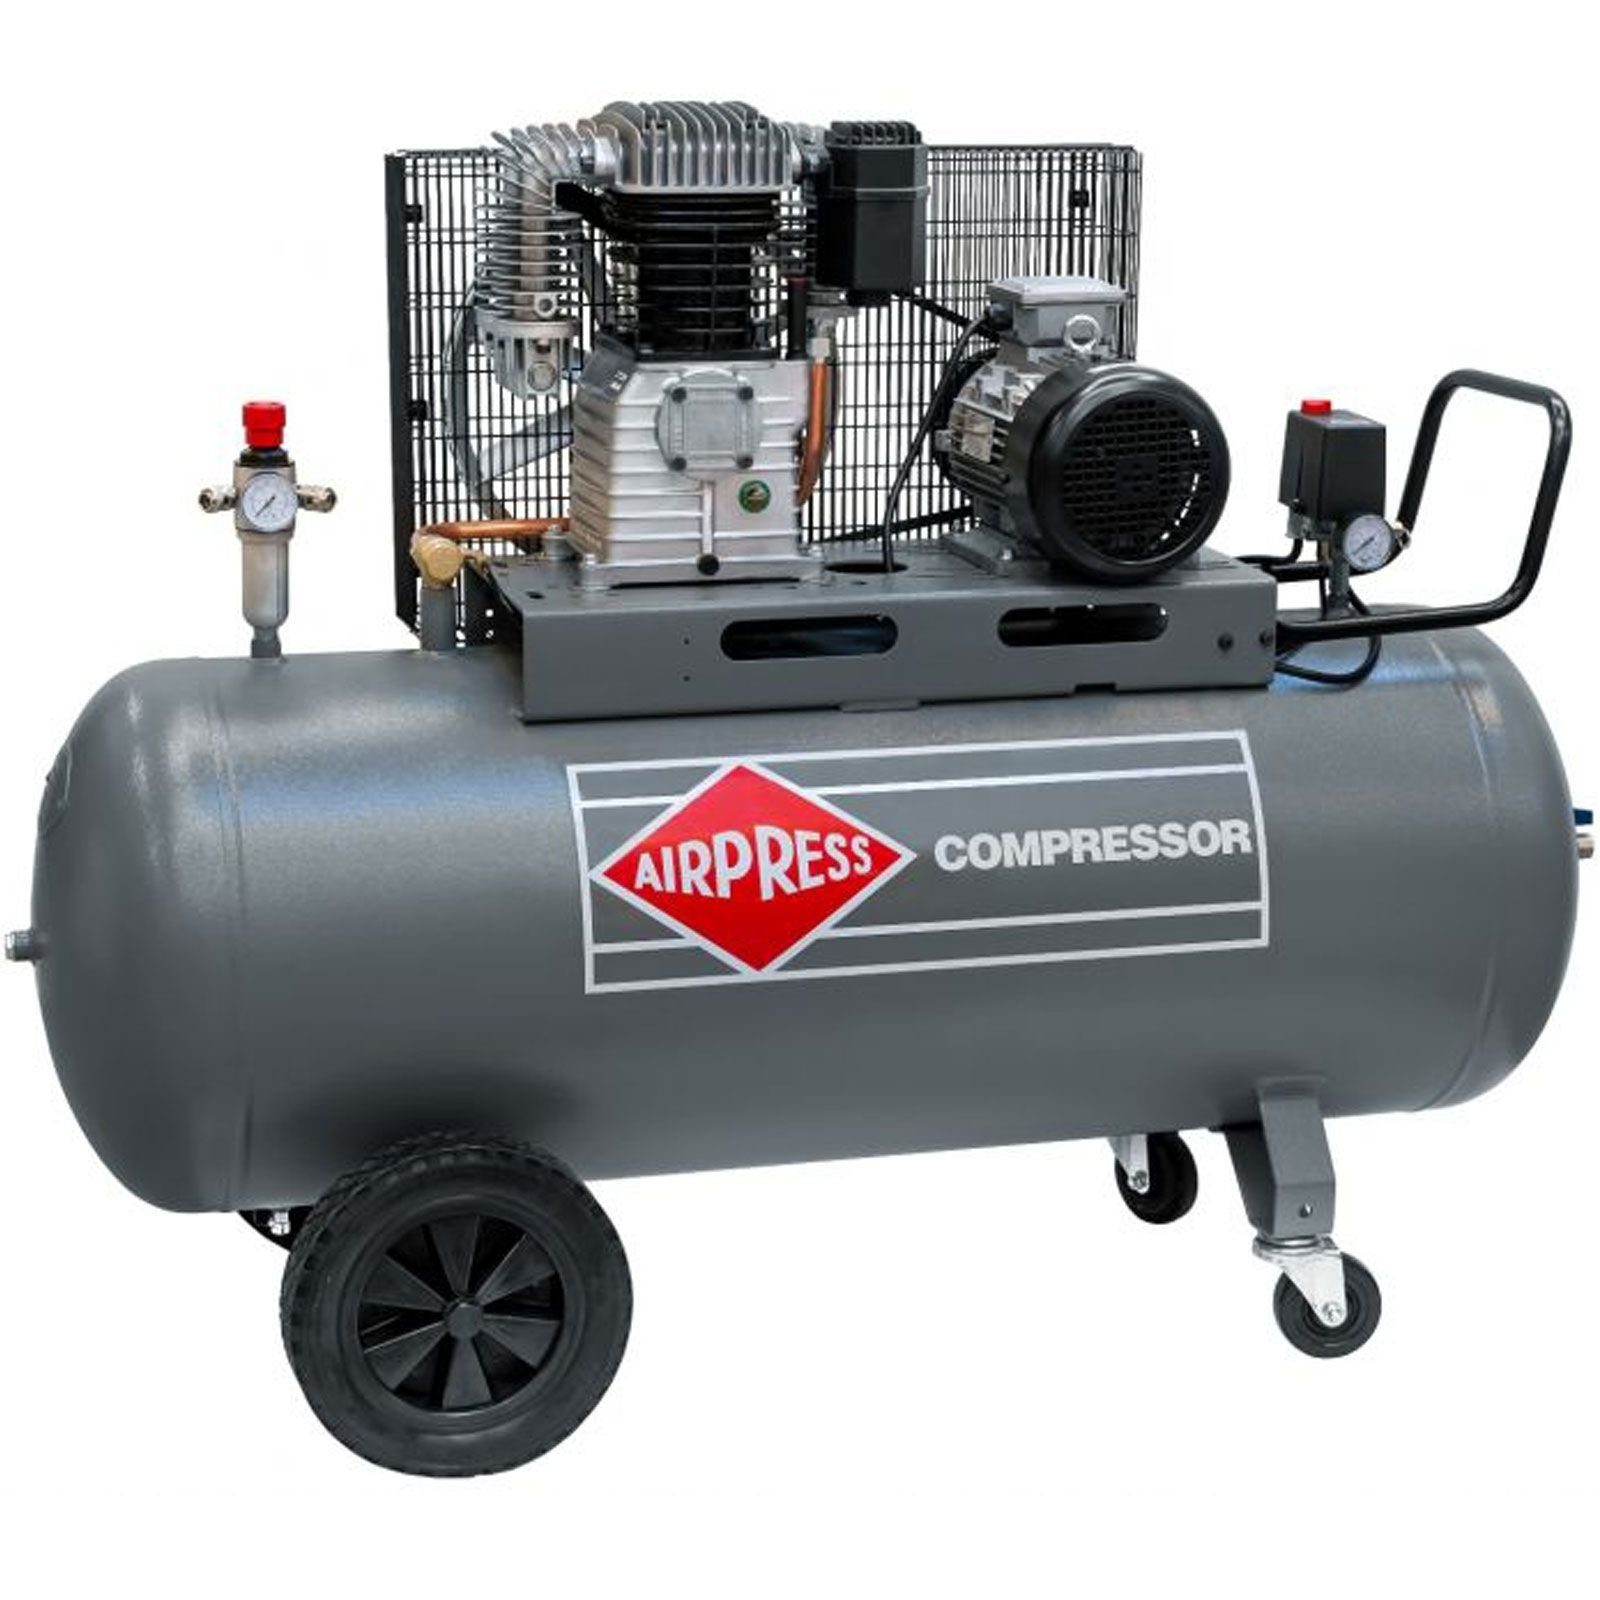 PS Liter 11 Kompressor Stück Airpress 11 HK700-300 max. Typ Druckluft- 1 270 270 5,5 bar, l, bar 360568, Kompressor